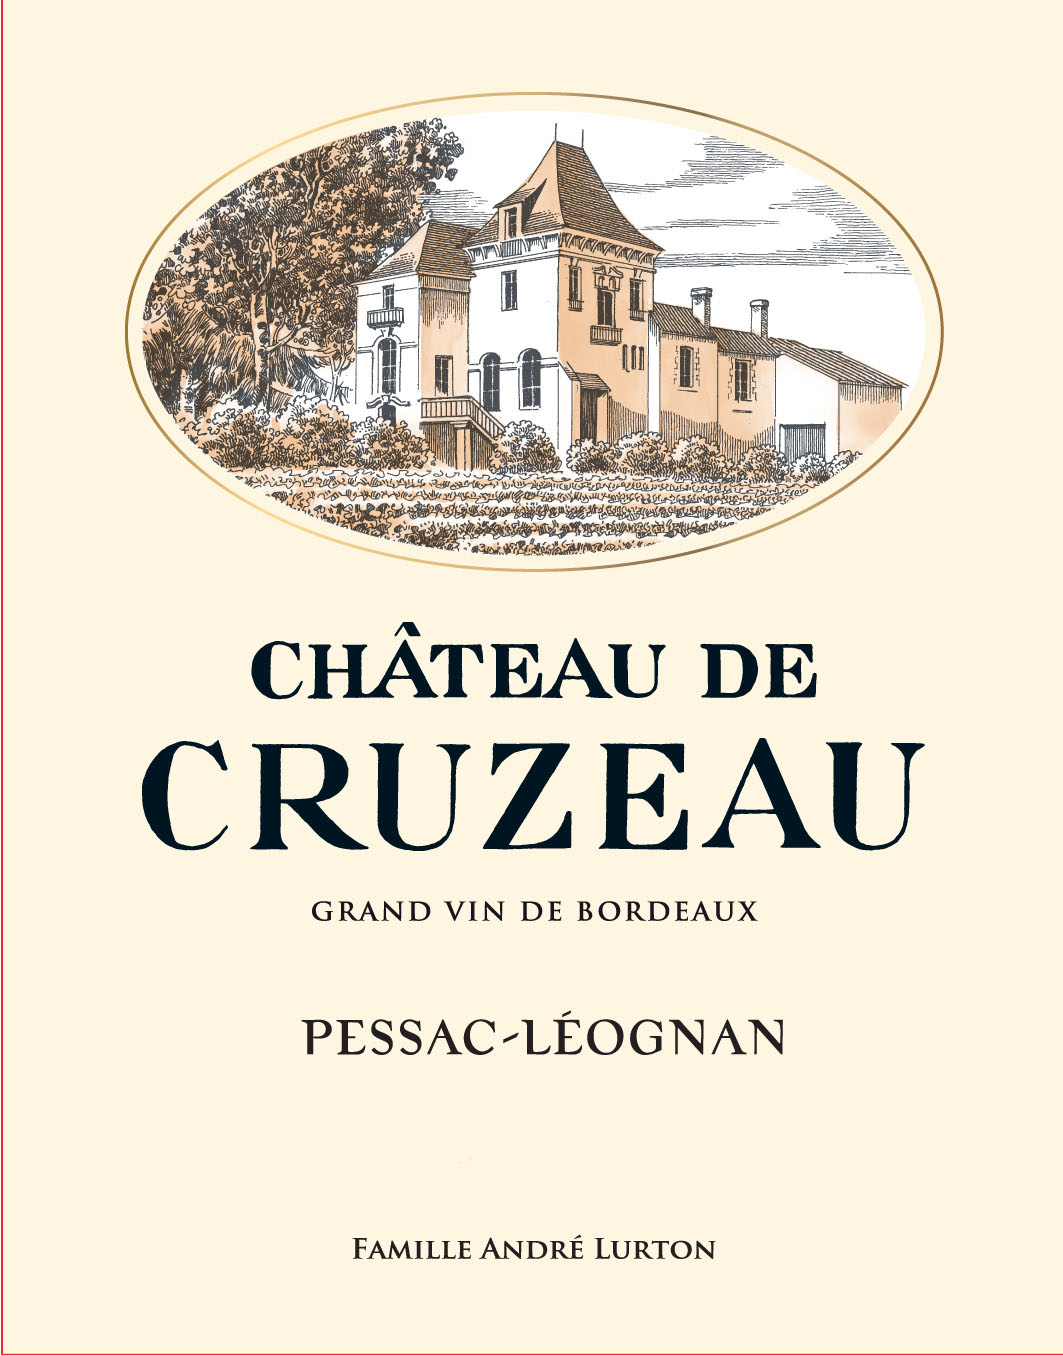 Chateau de Cruzeau - Rouge label